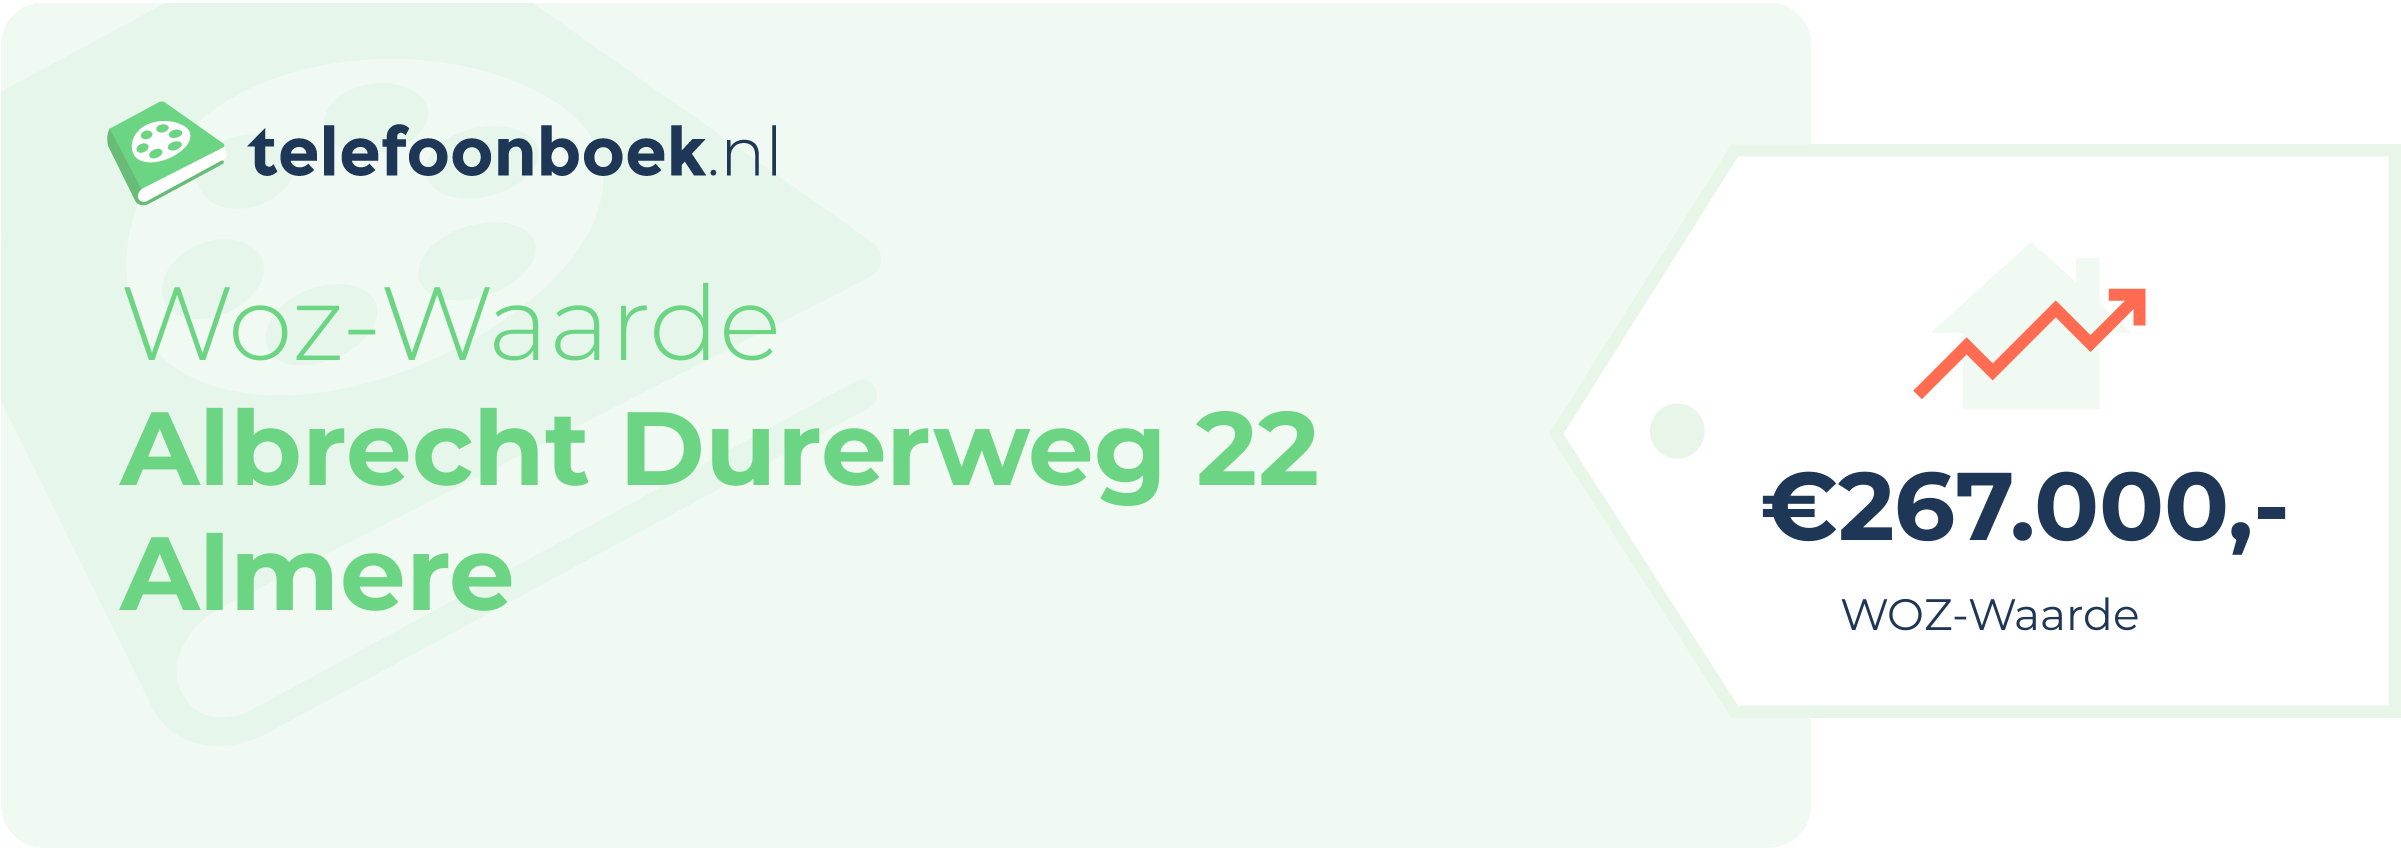 WOZ-waarde Albrecht Durerweg 22 Almere